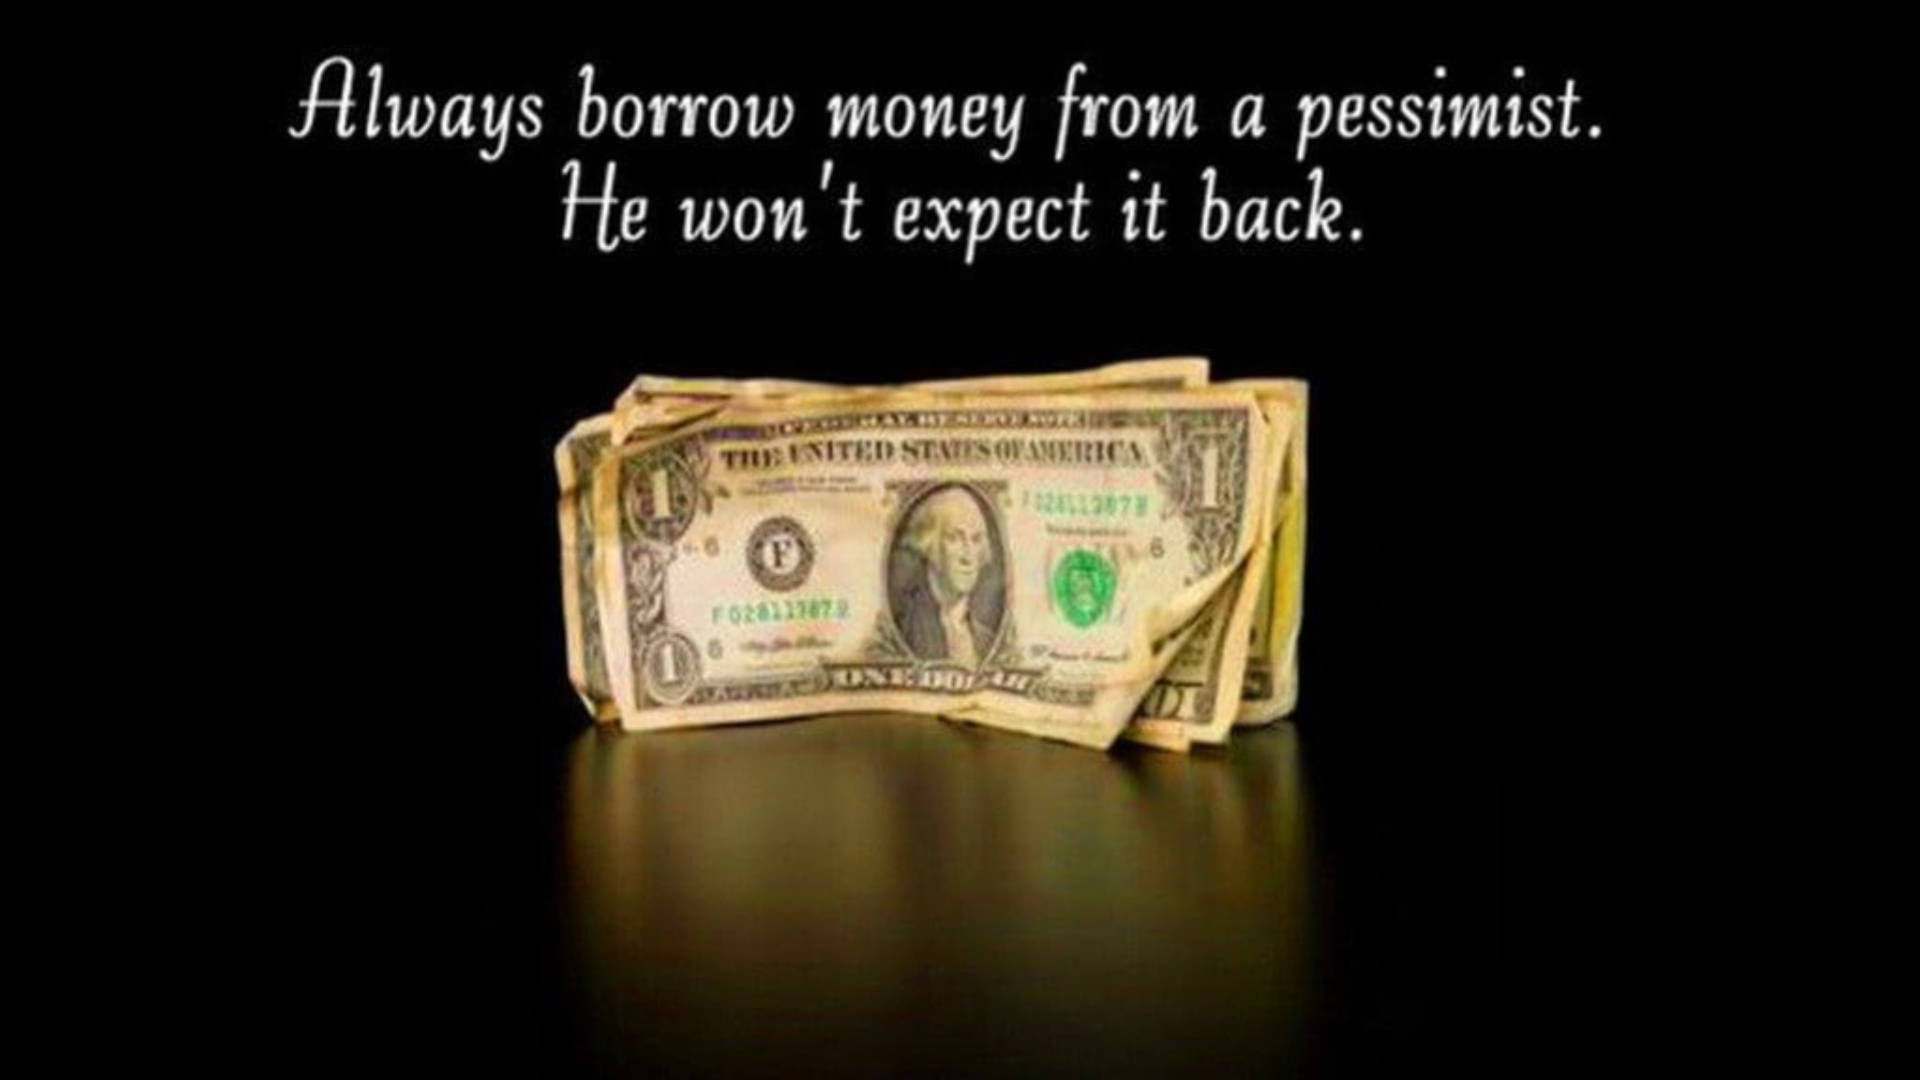 Pessimistic Money Picture